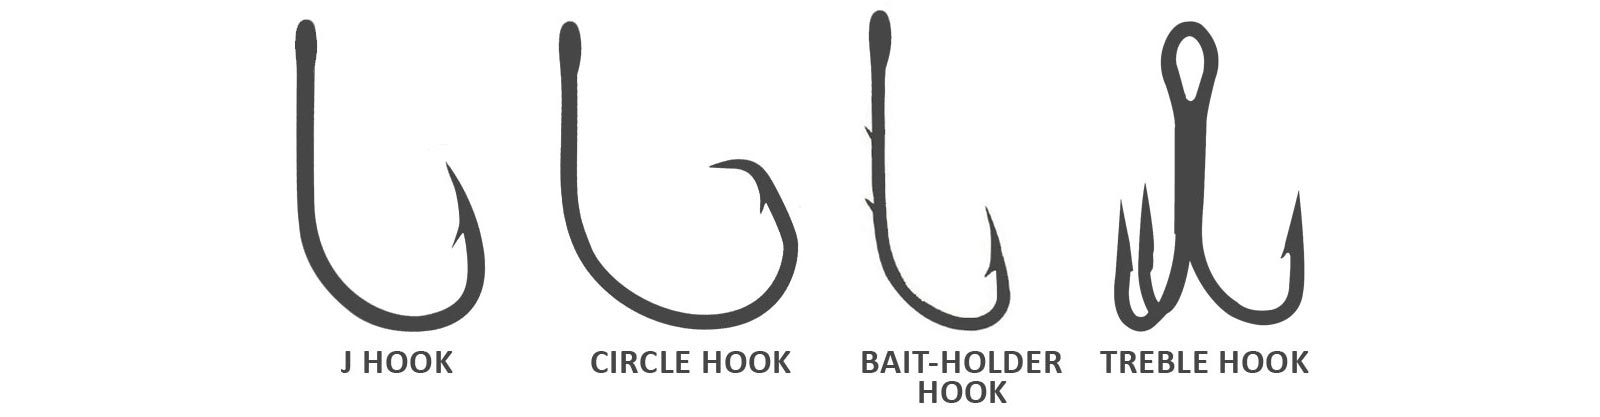 Fish Hook Diagram 1